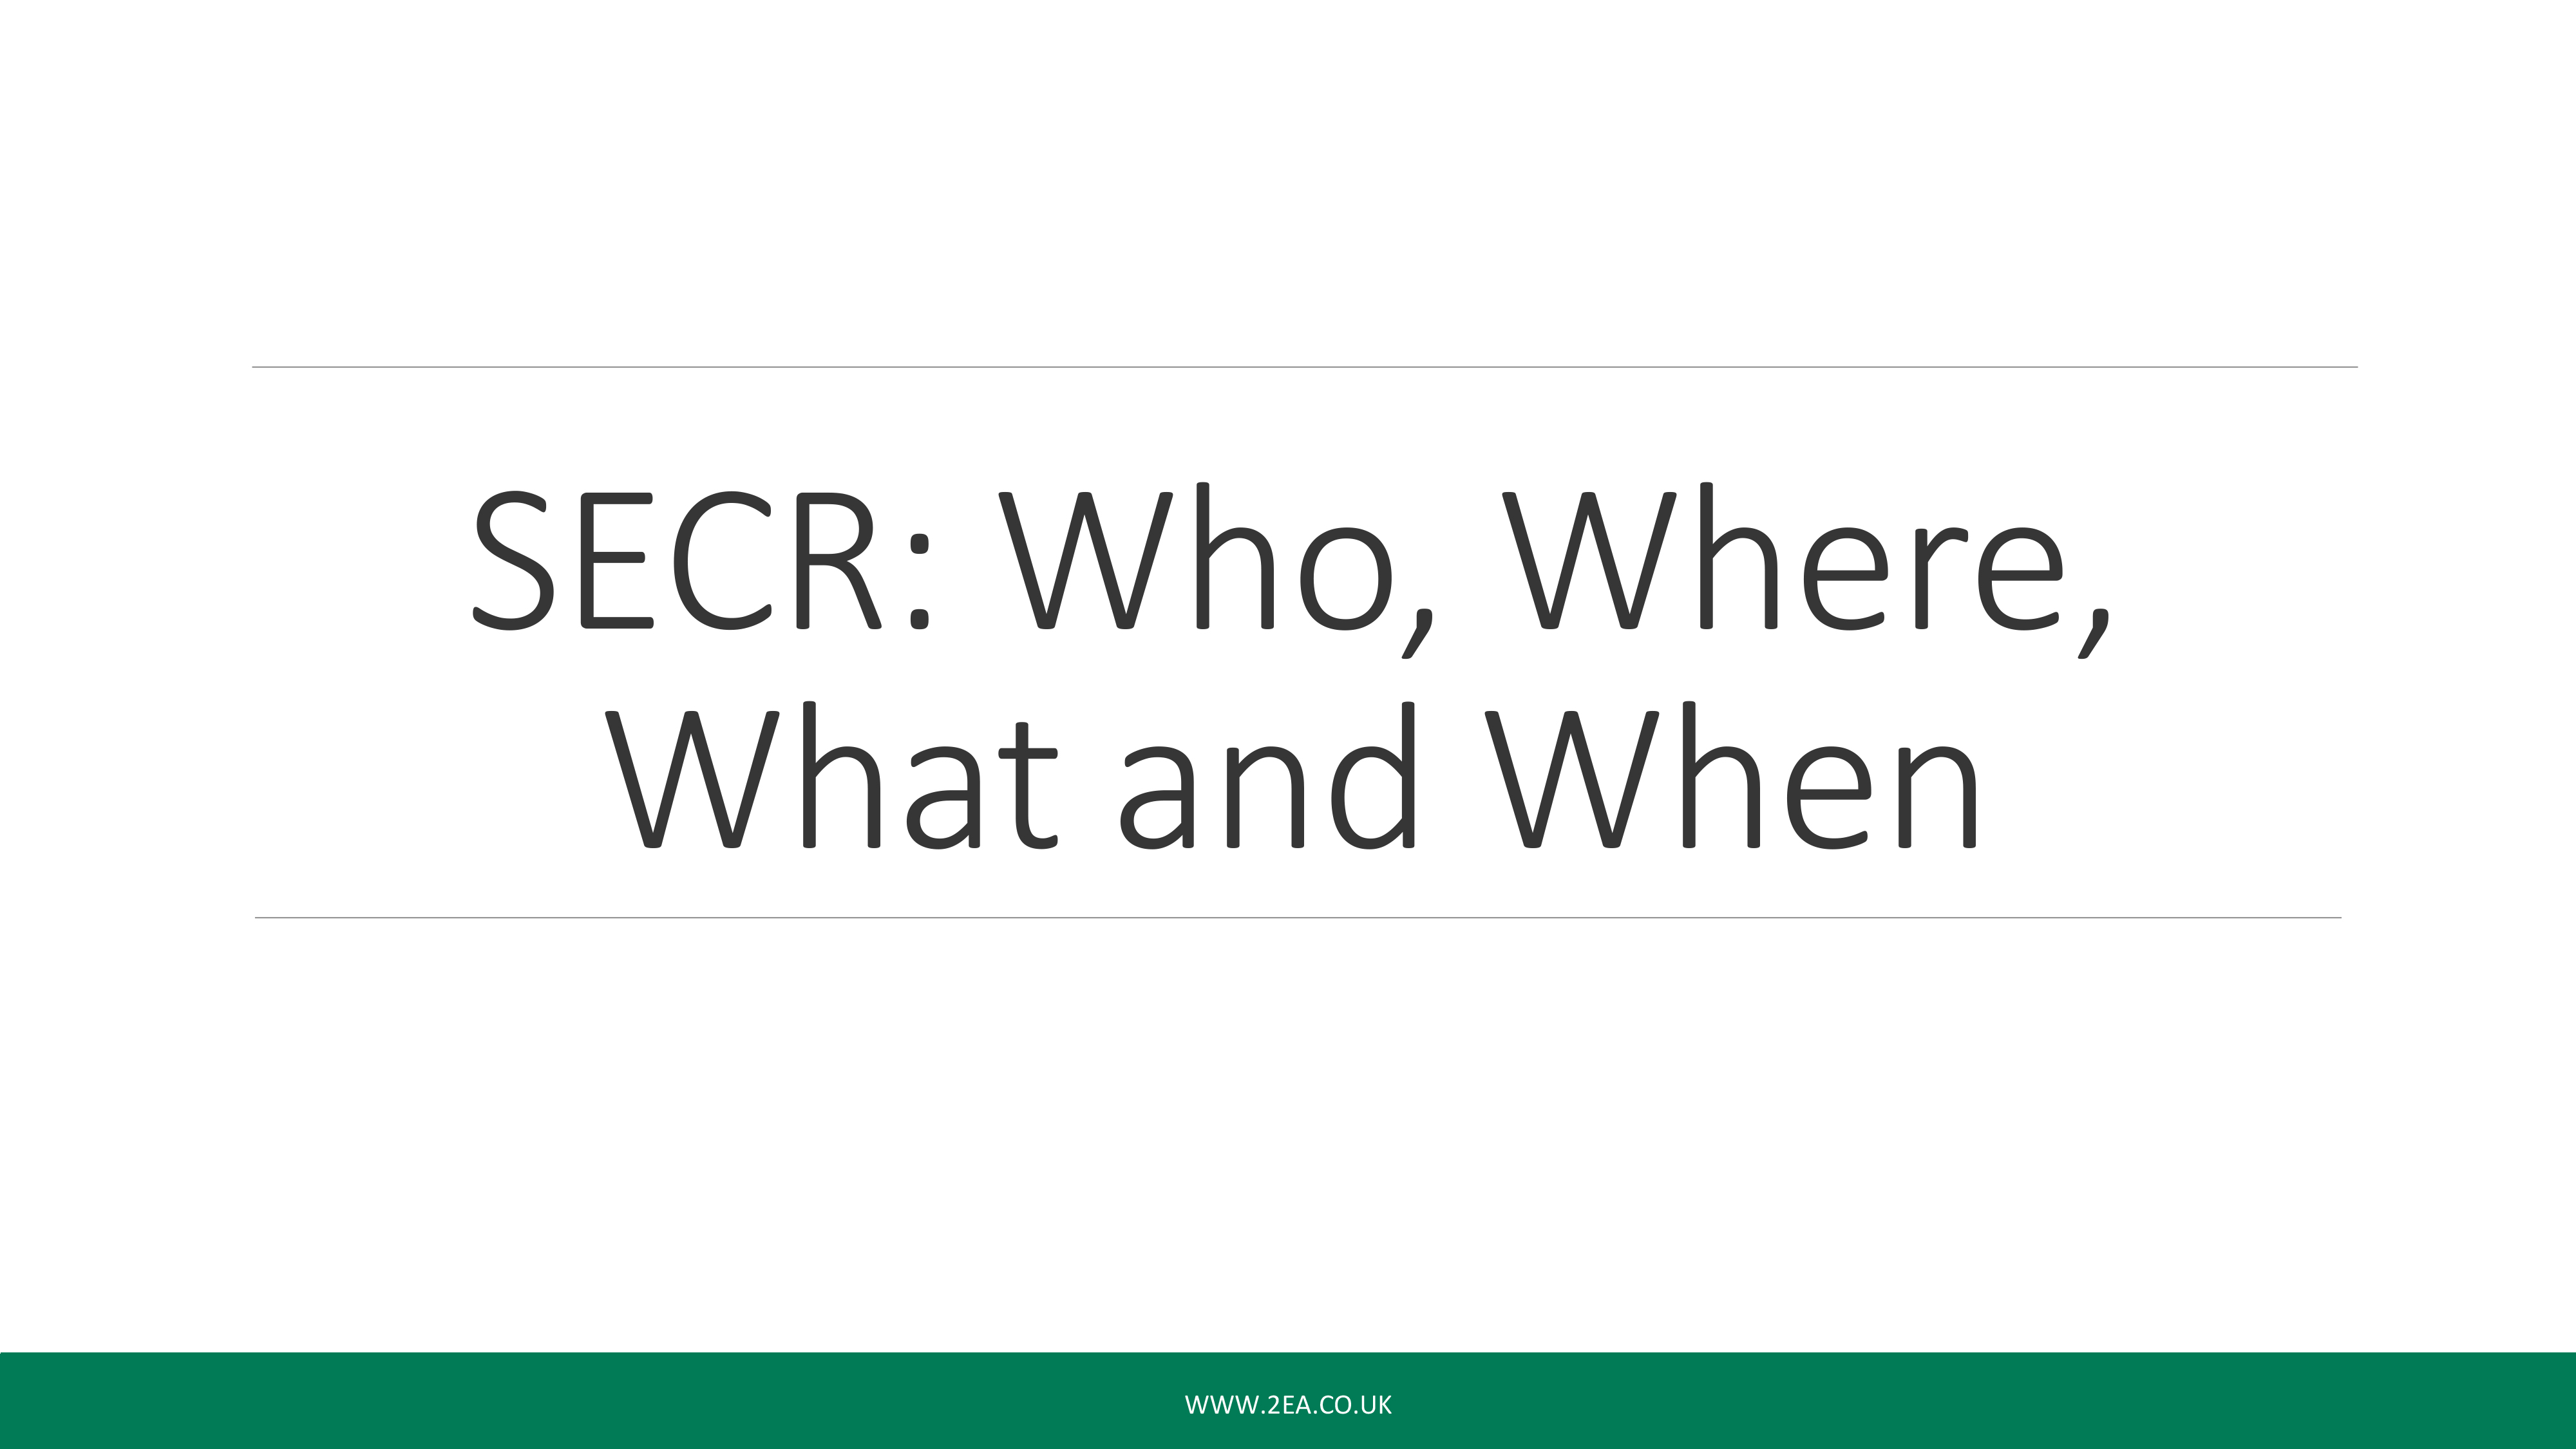 SECR Webinar: Who, What, Where, When